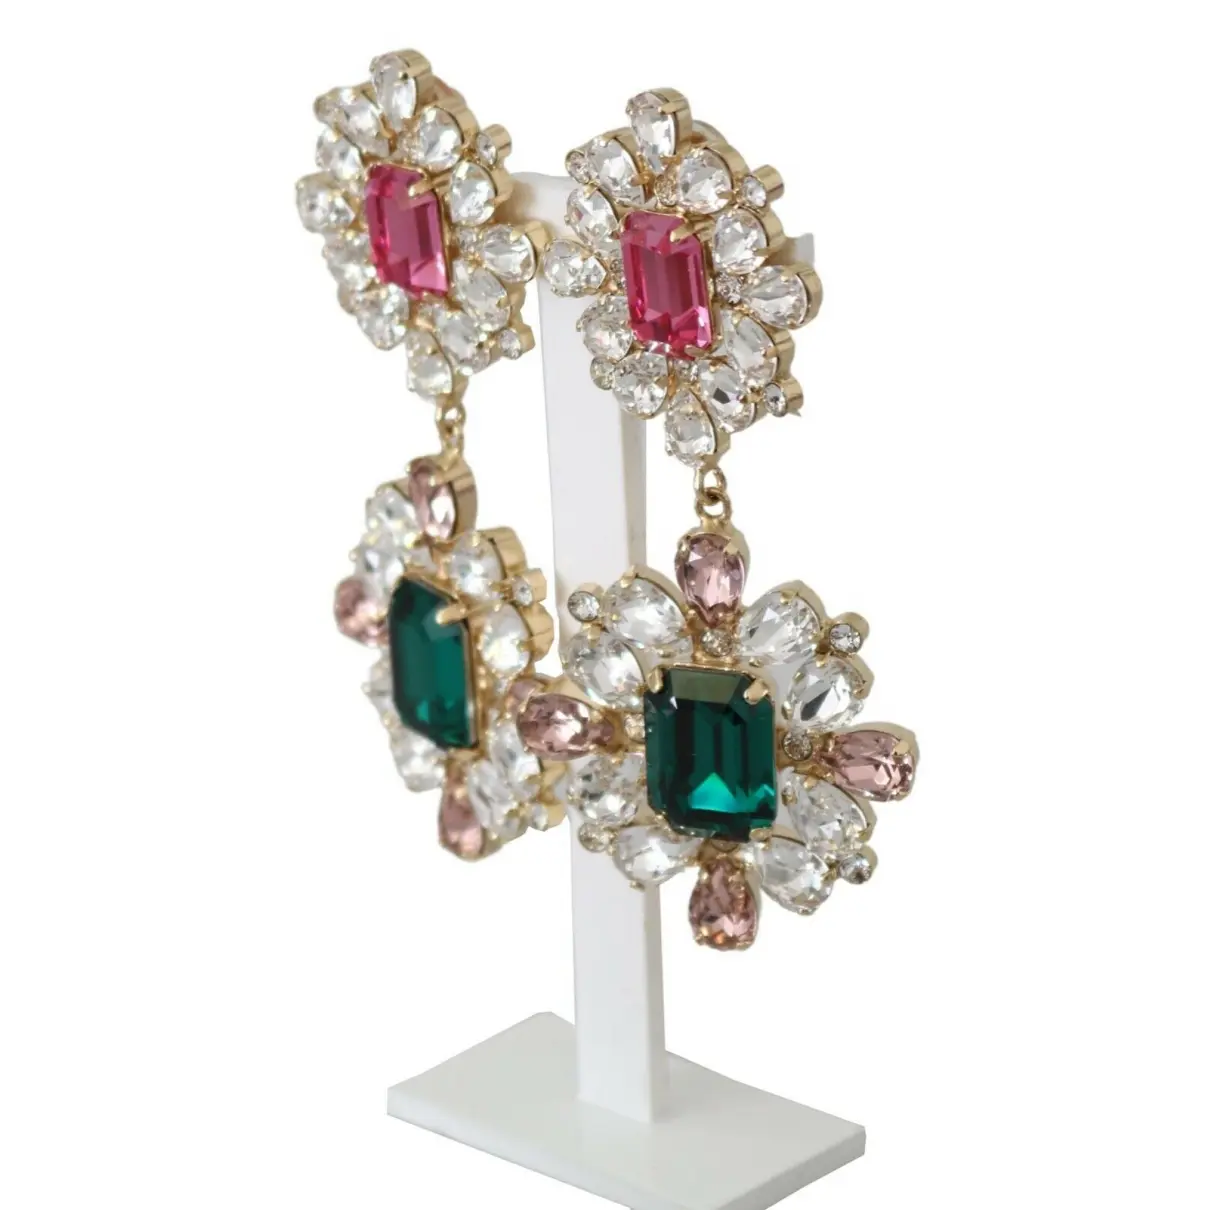 Buy Dolce & Gabbana Earrings online